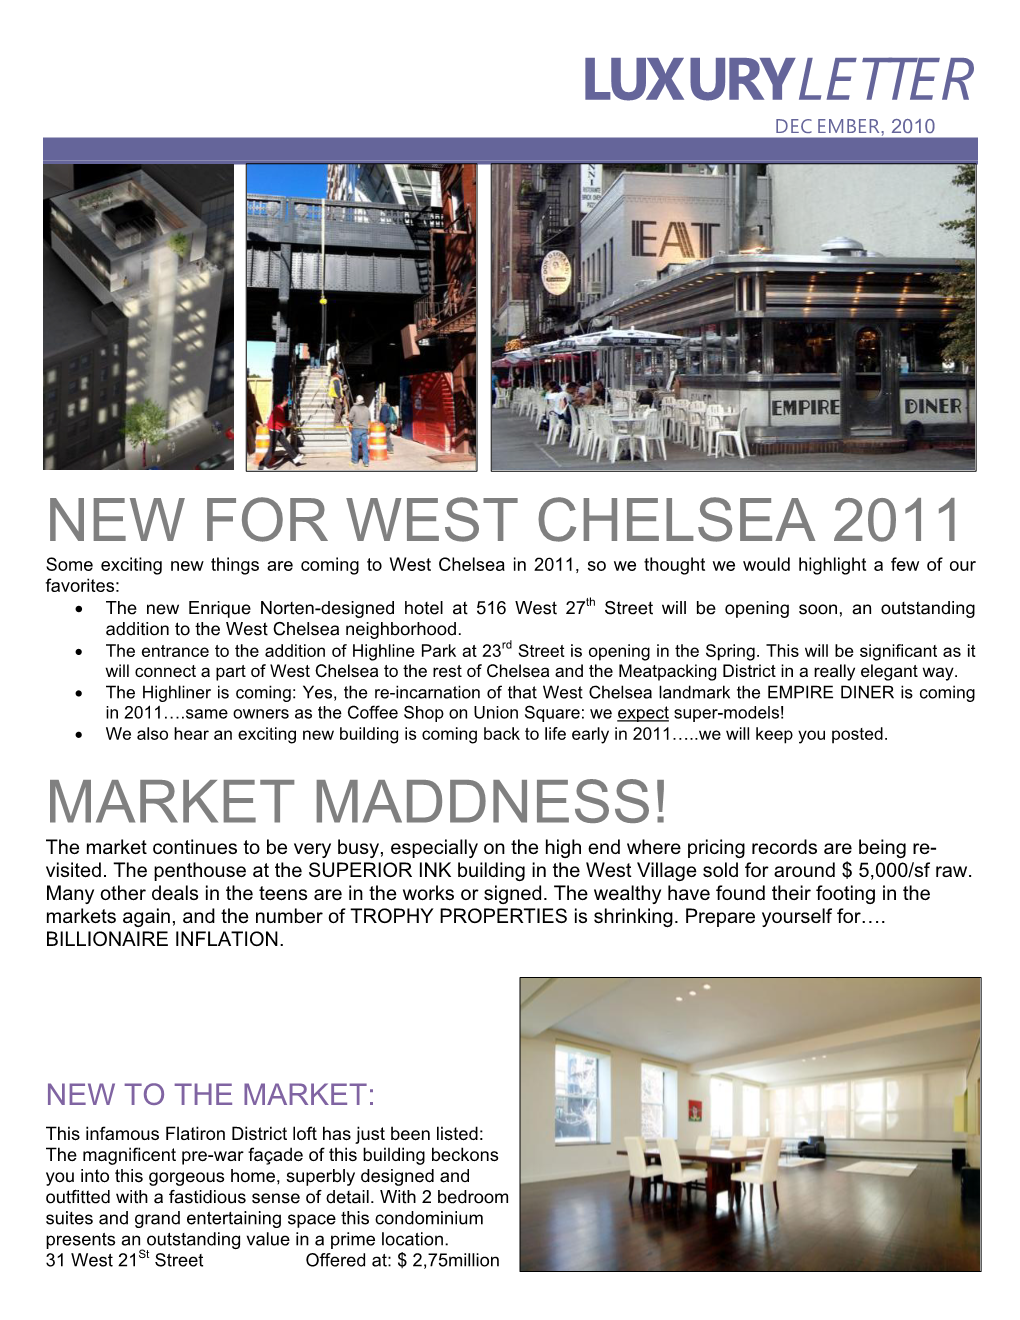 Luxuryletter New for West Chelsea 2011 Market